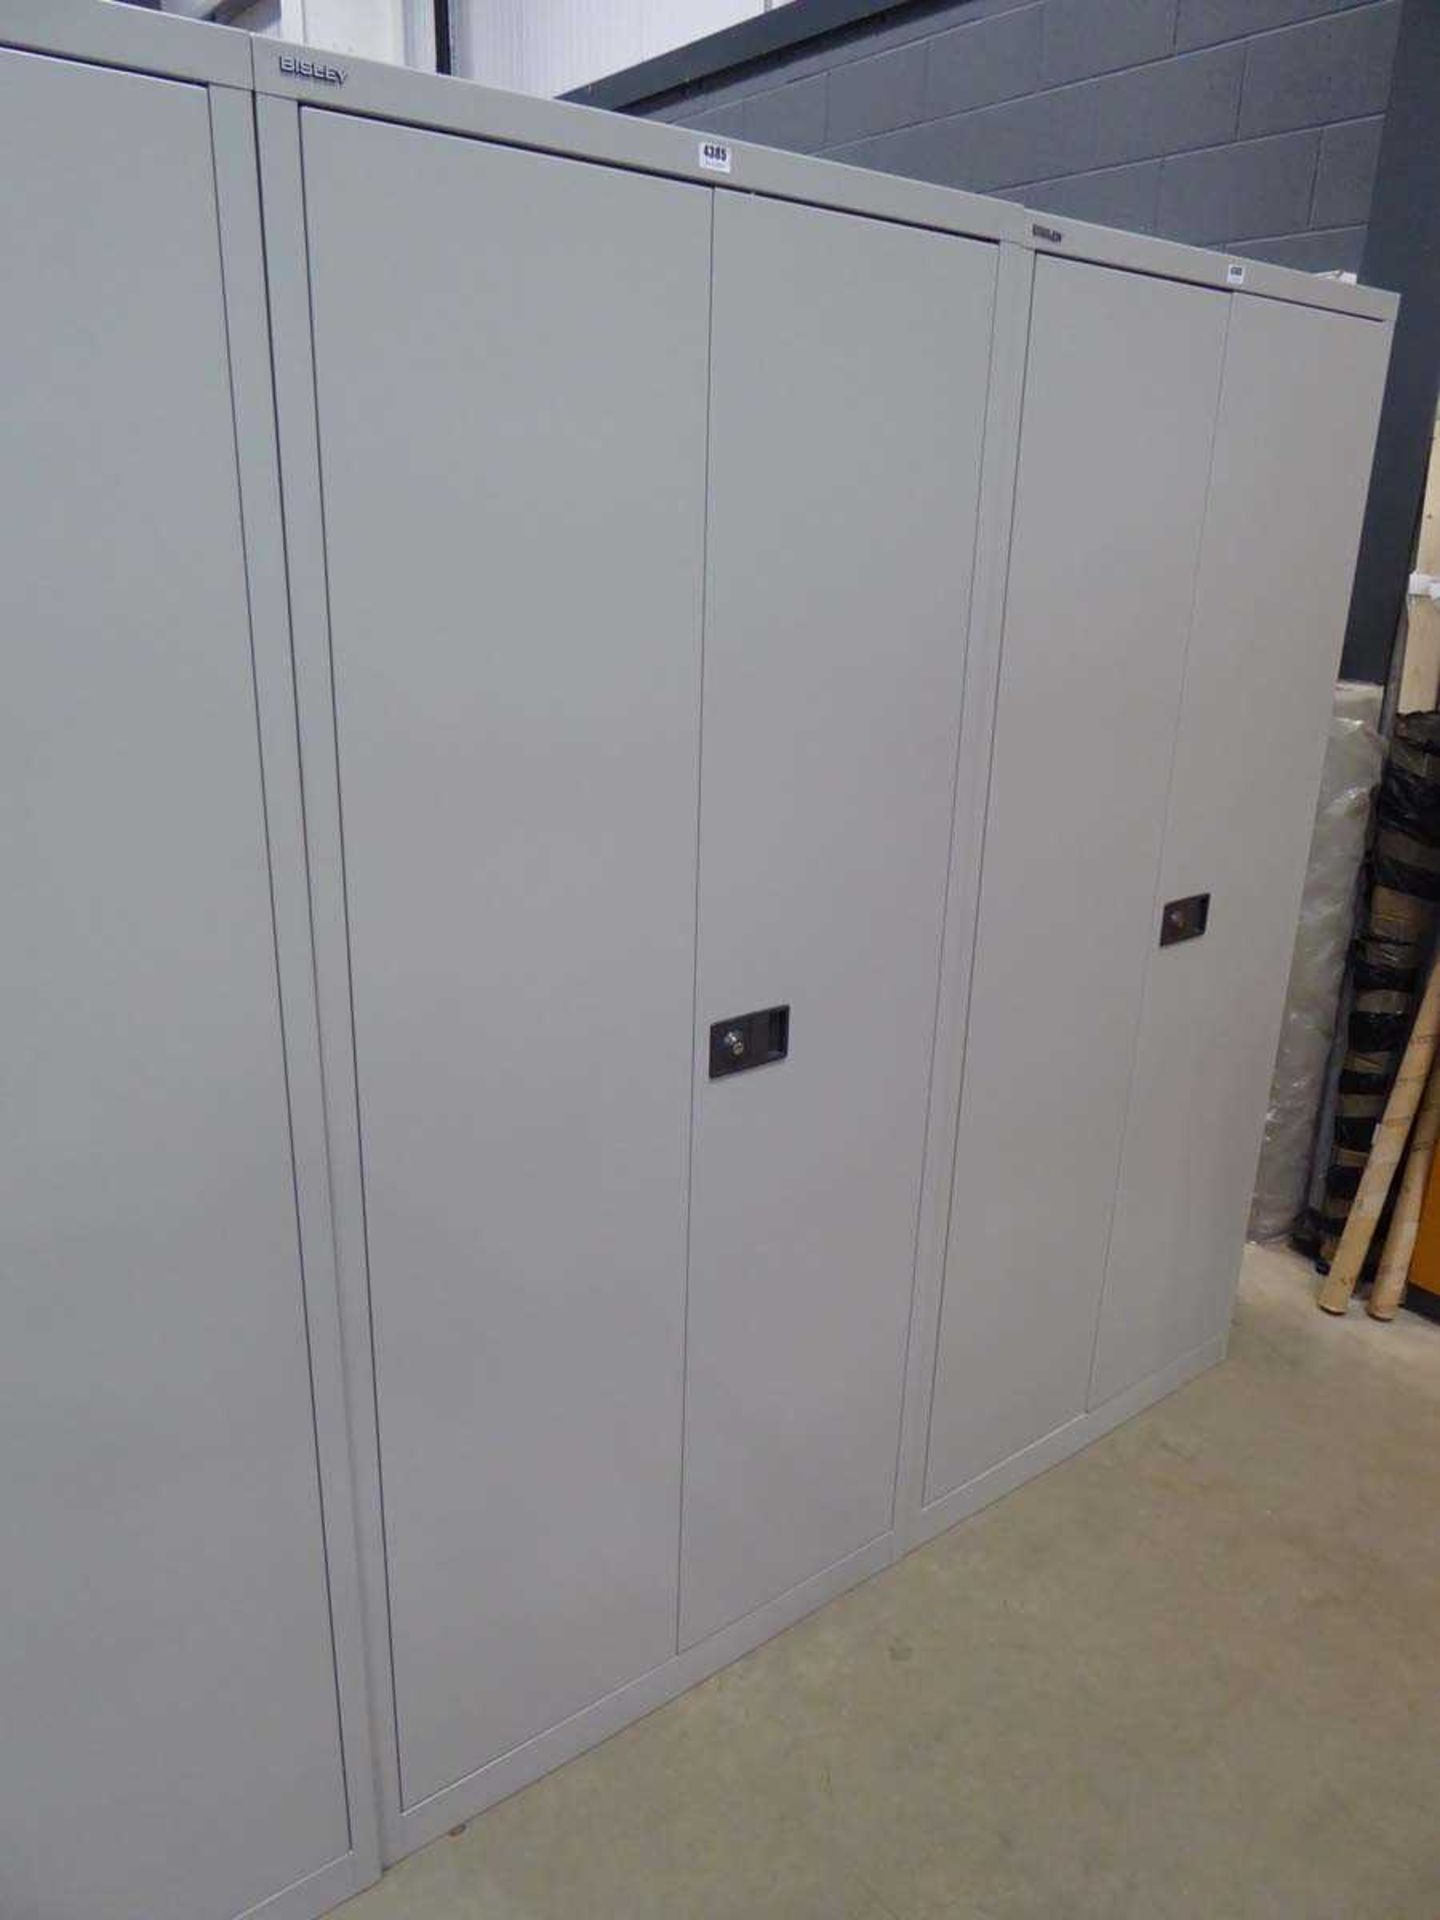 Bisley 2 door stationary cupboard in grey with shelving